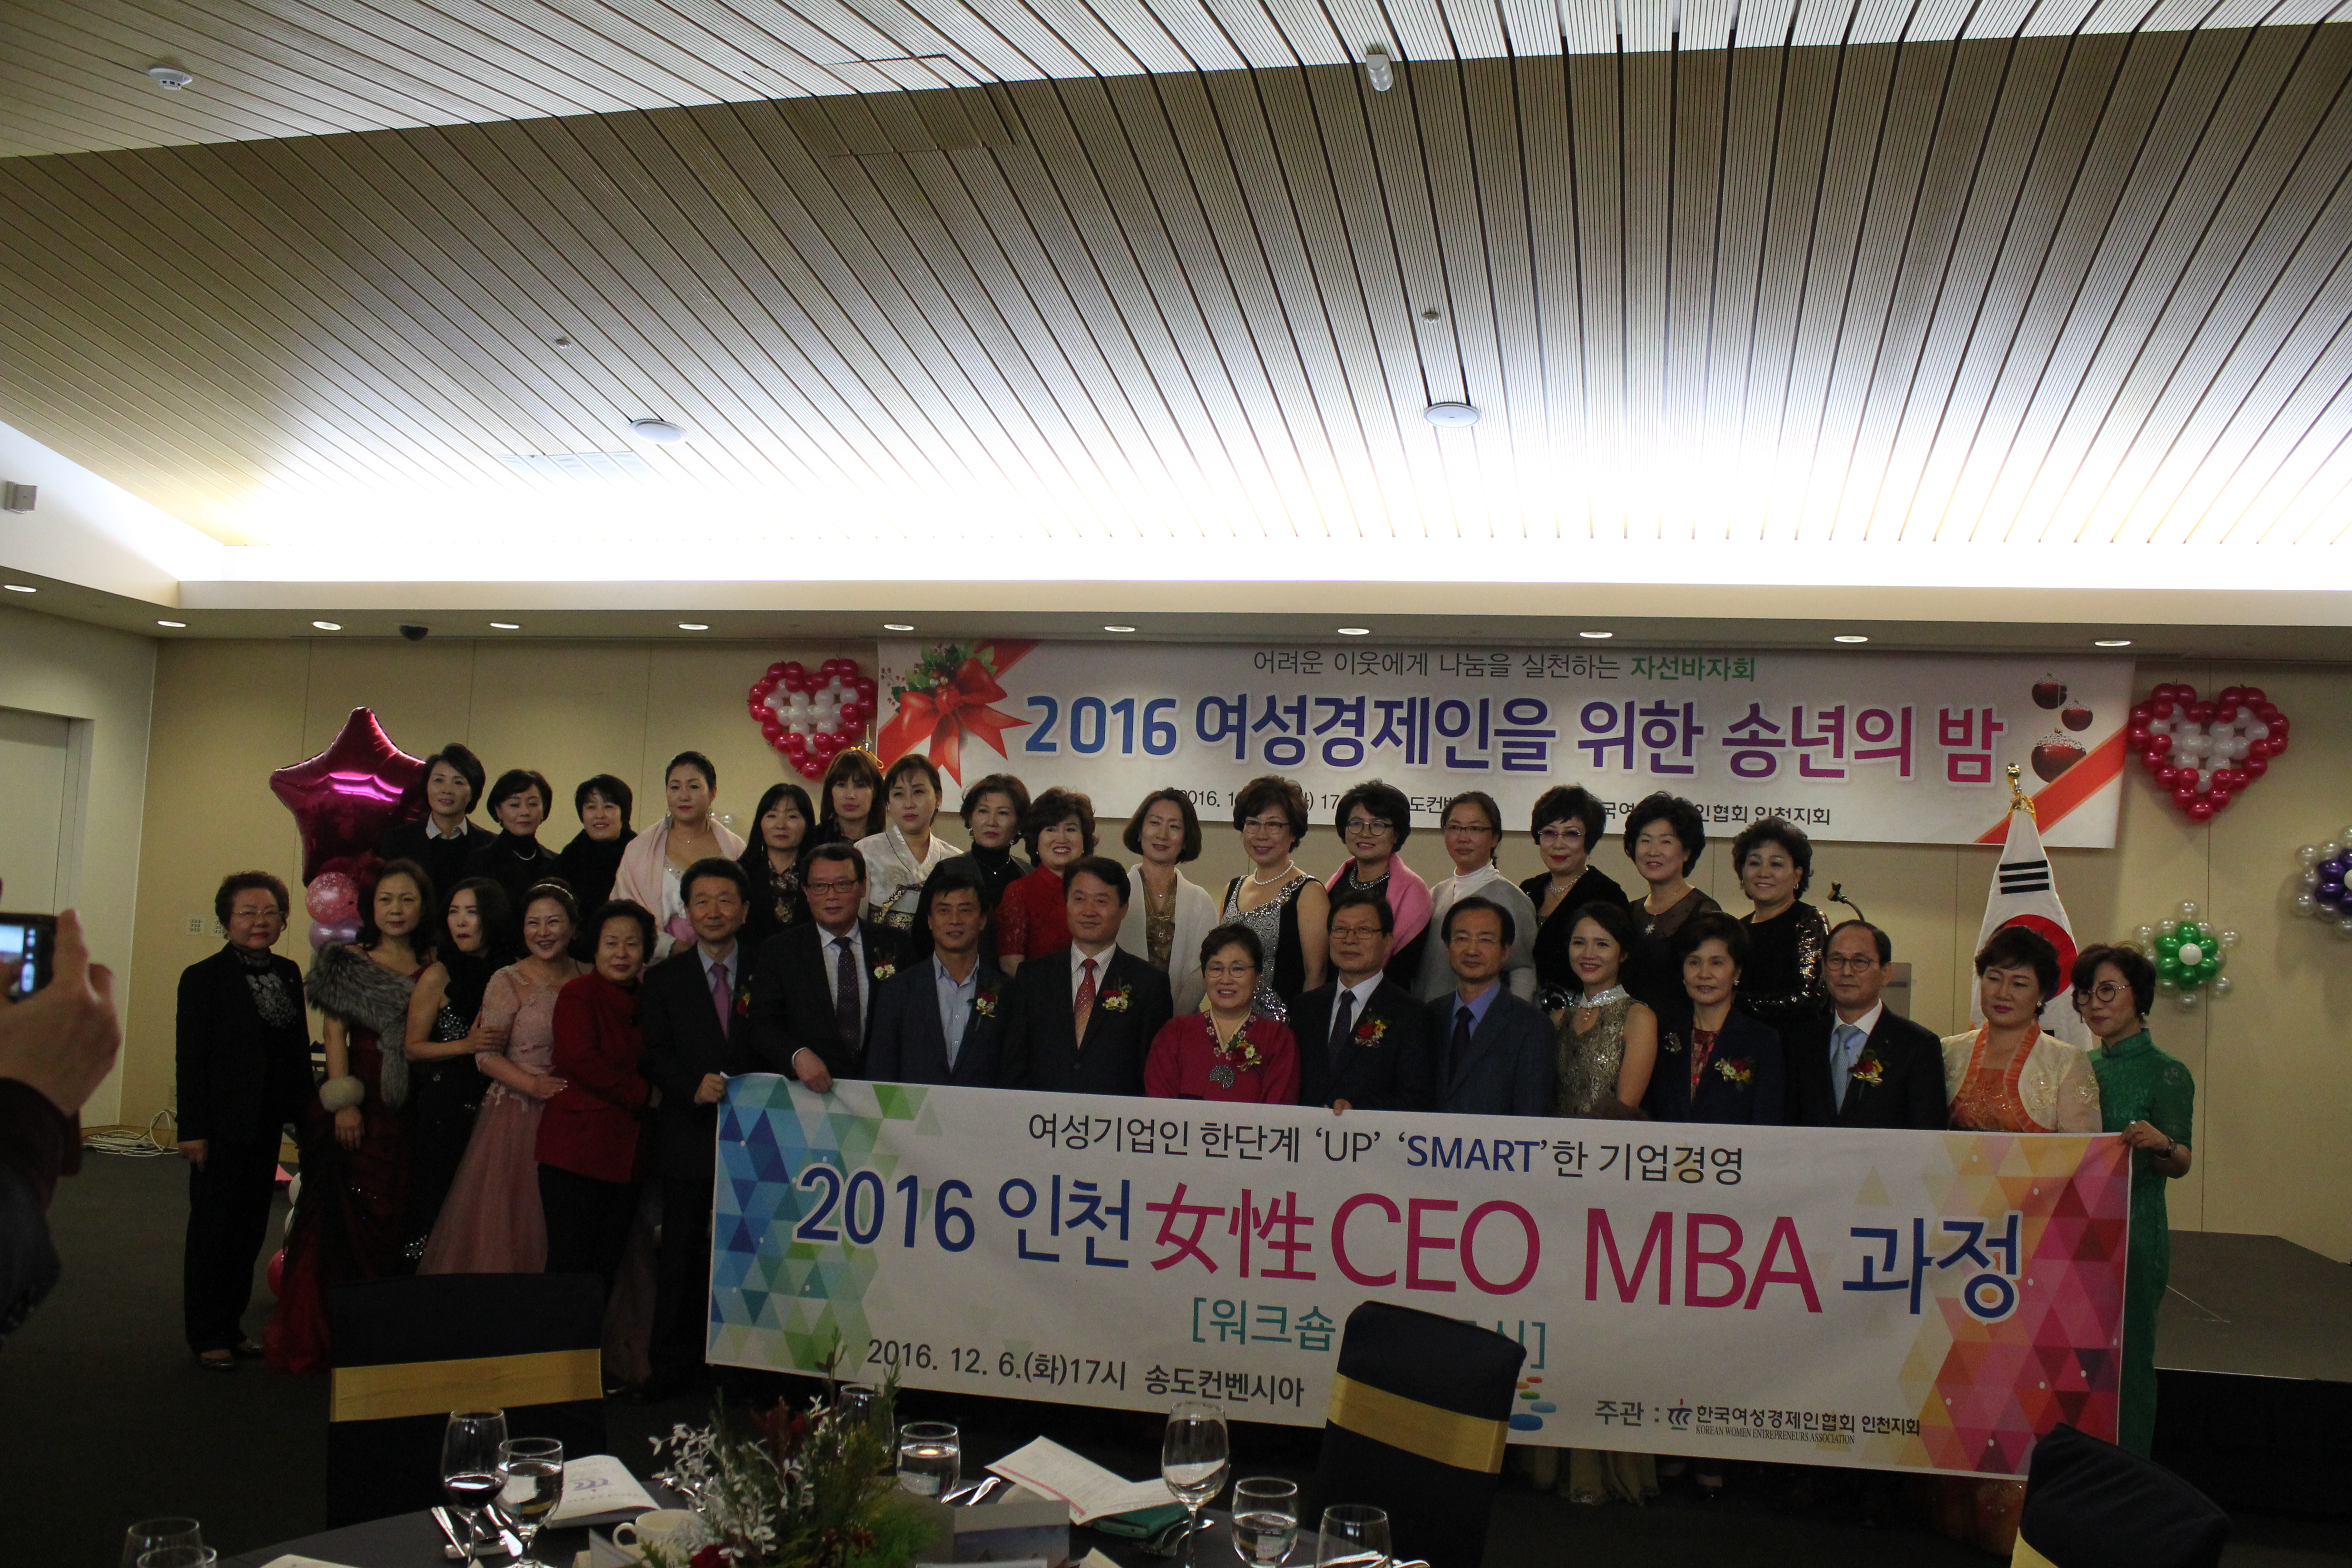 2016 여성CEO MBA 수료식 및 여성경제 